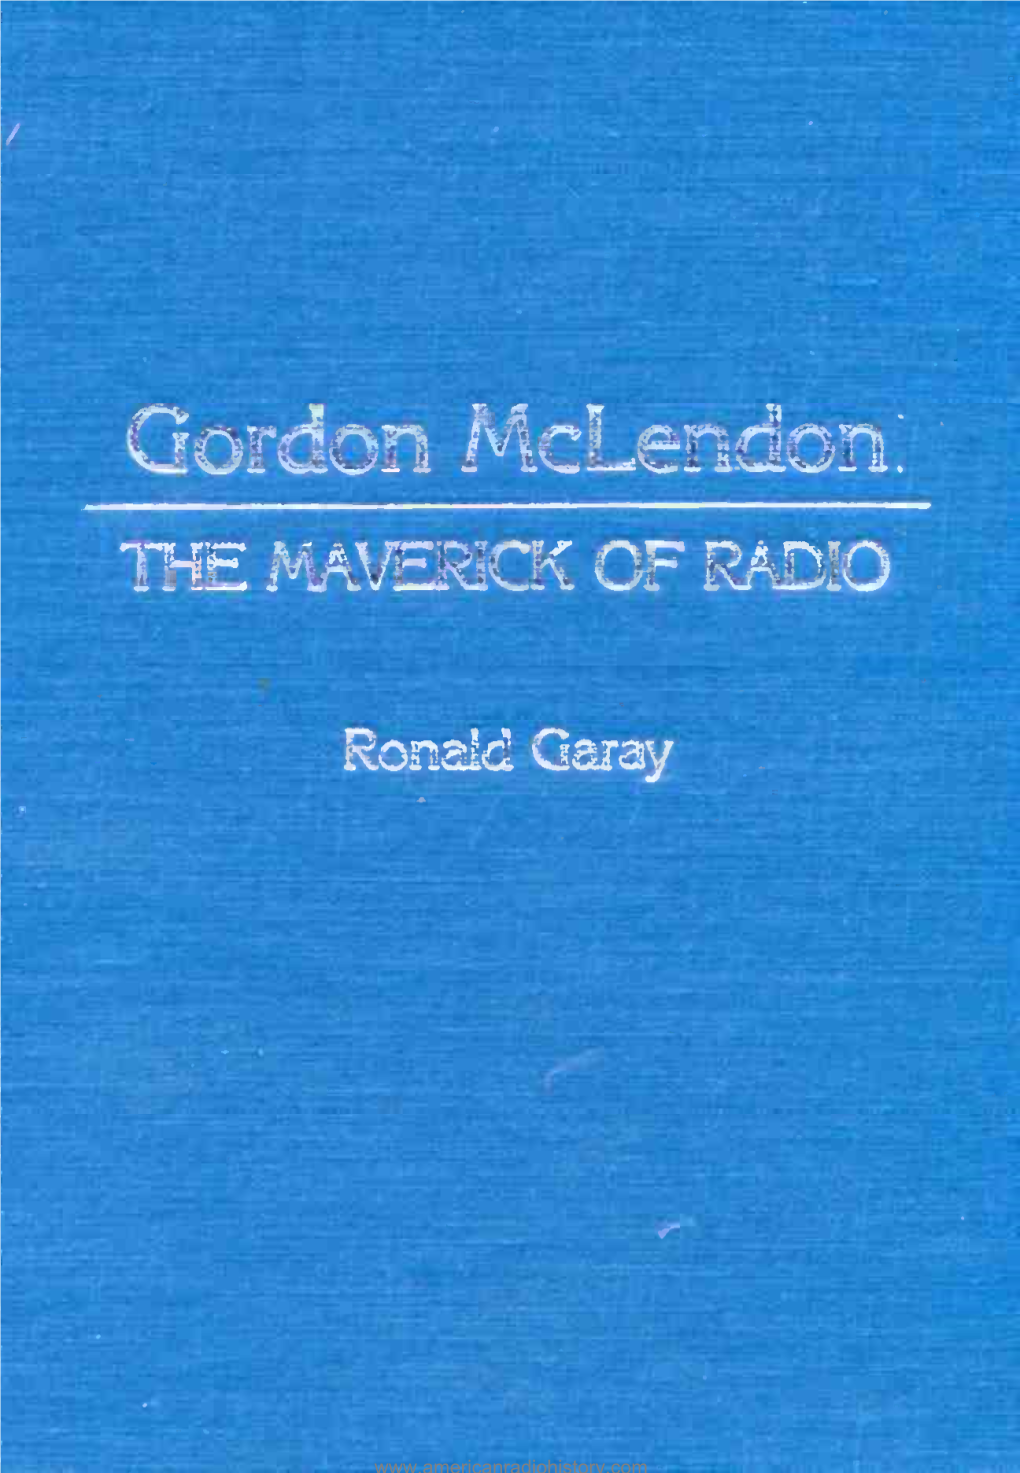 Gordon Mclendon